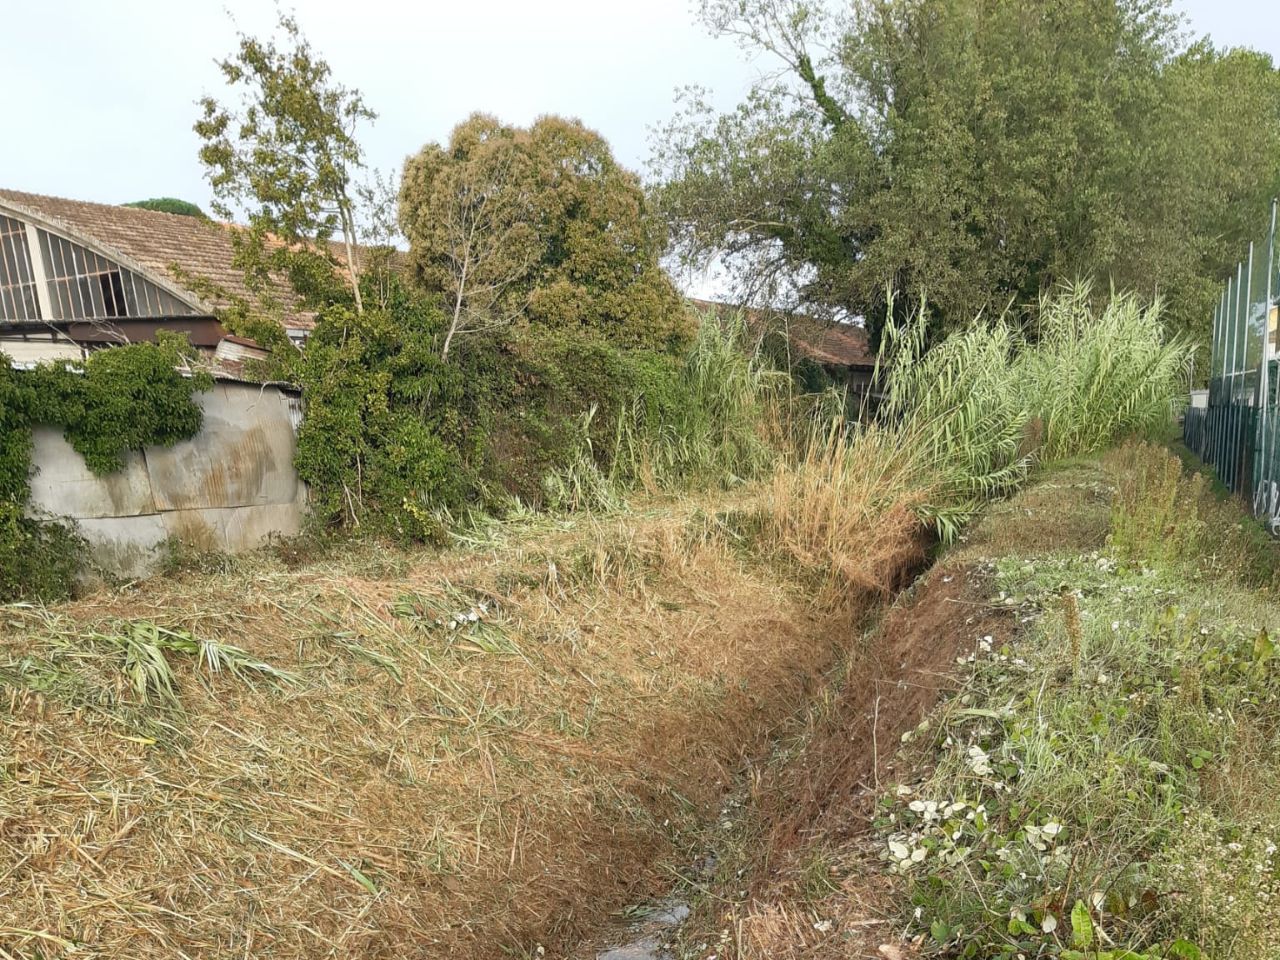 Pulitura dei fossi, proseguono le manutenzioni straordinarie in tutto il territorio comunale 